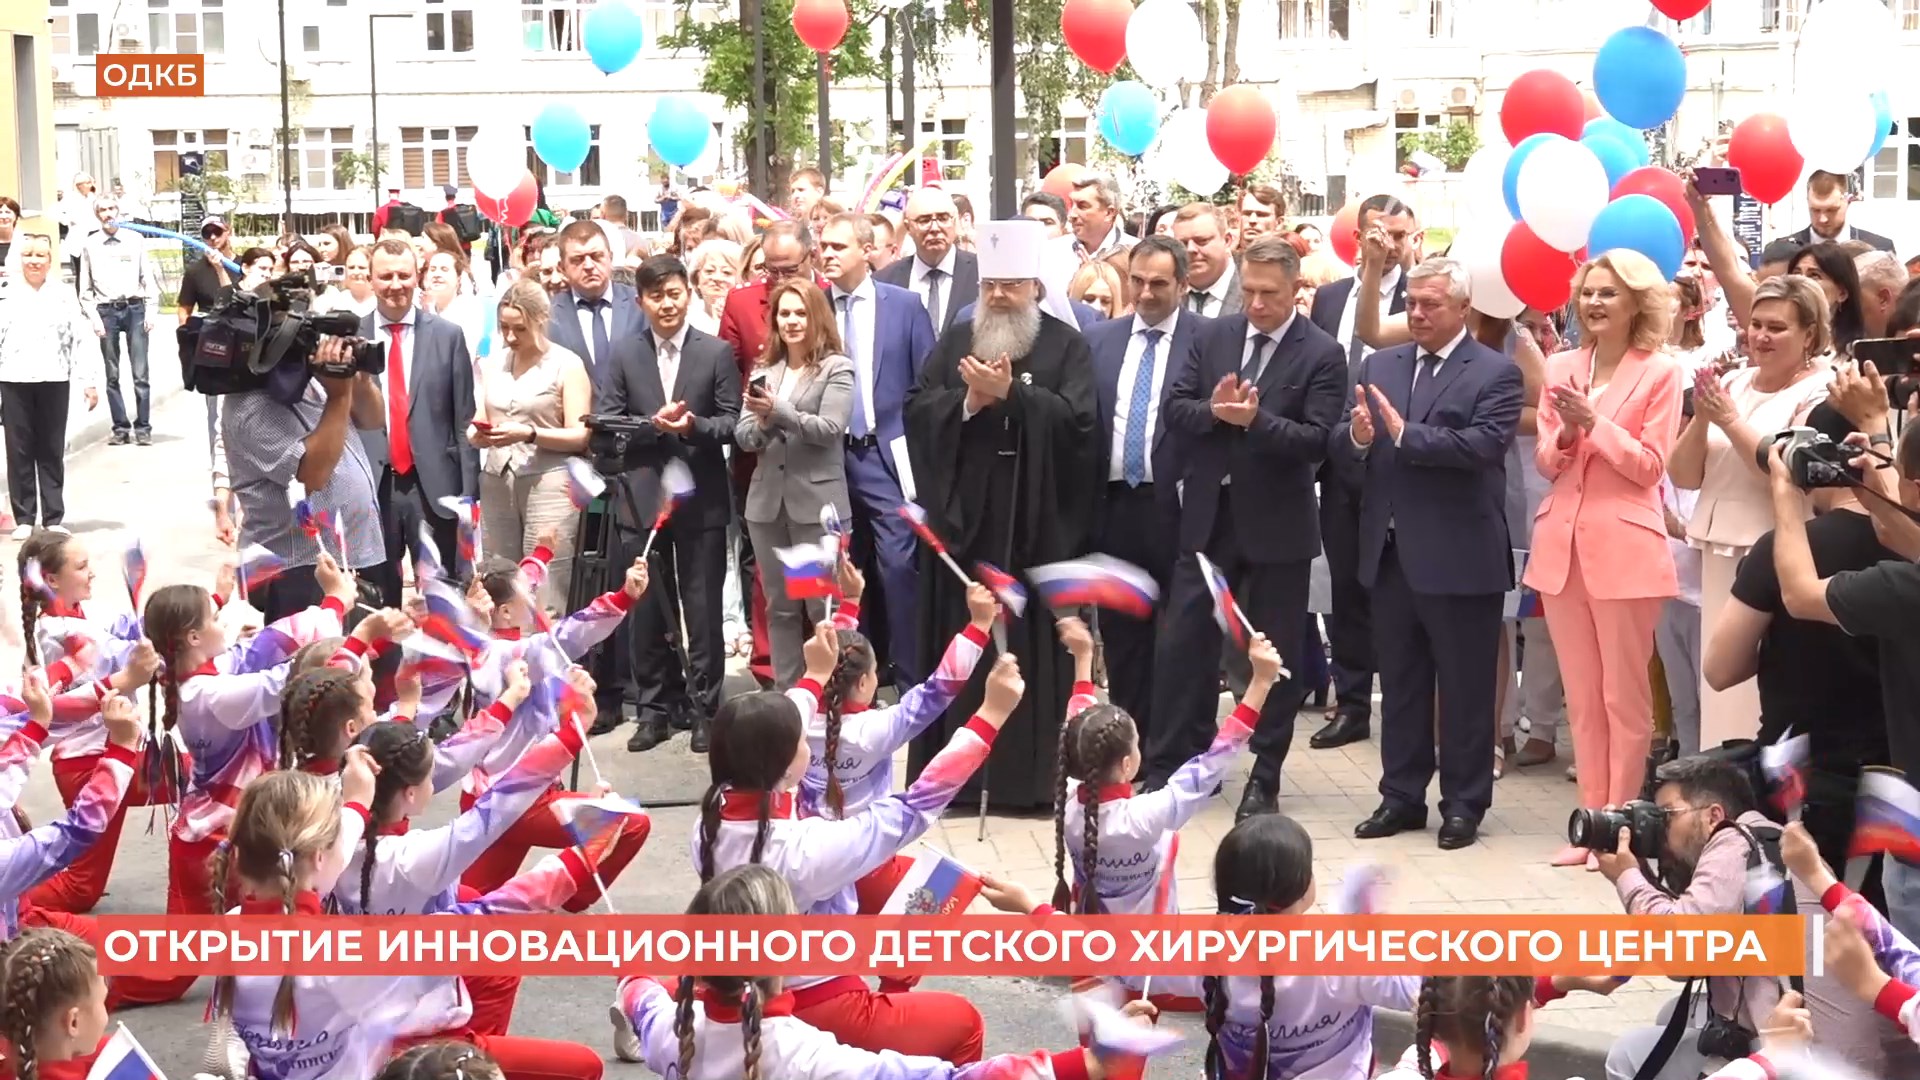 В Ростове открыли областной детский хирургический центр инновационных технологий